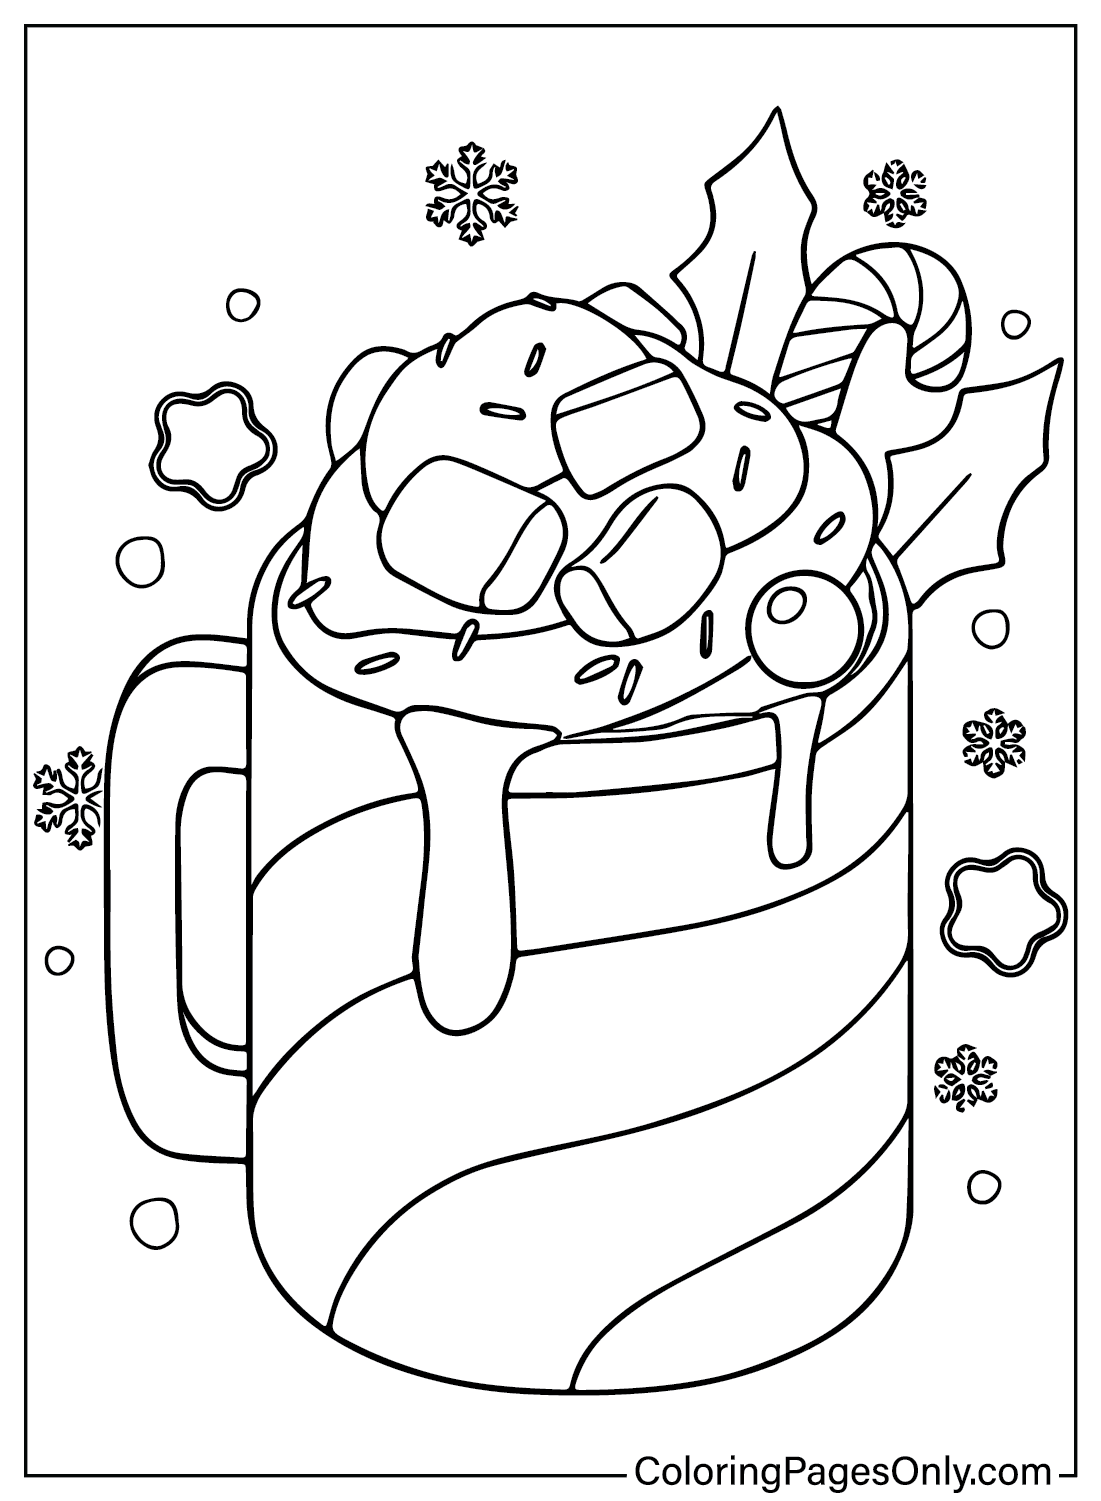 PDF da página para colorir do Milkshake de Natal do Milkshake de Natal